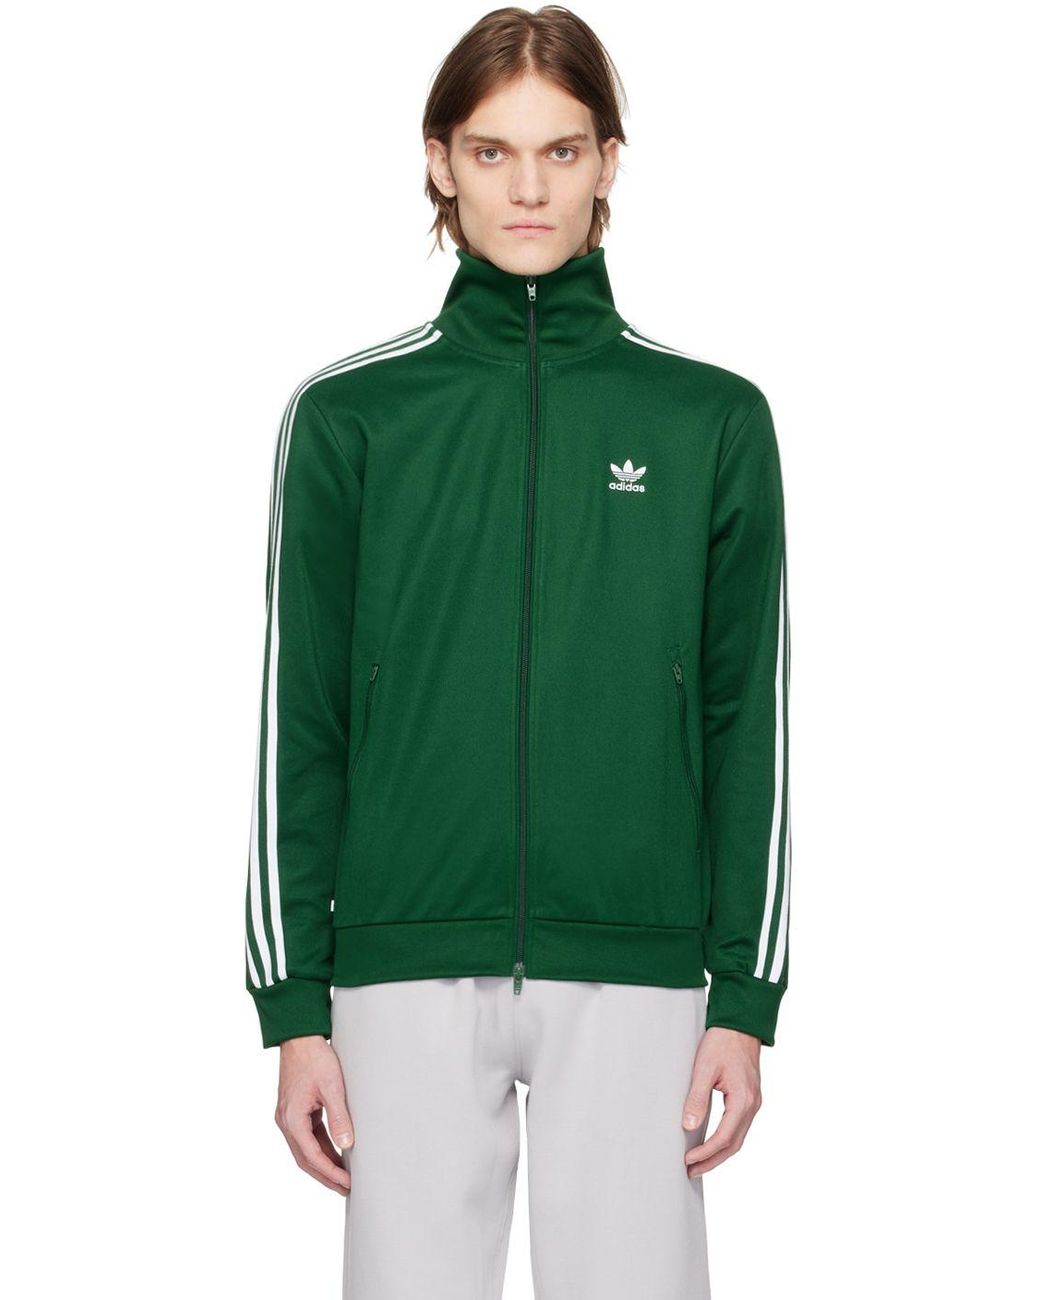 adidas Originals Green Adicolor Classics Beckenbauer Track Jacket for Men |  Lyst